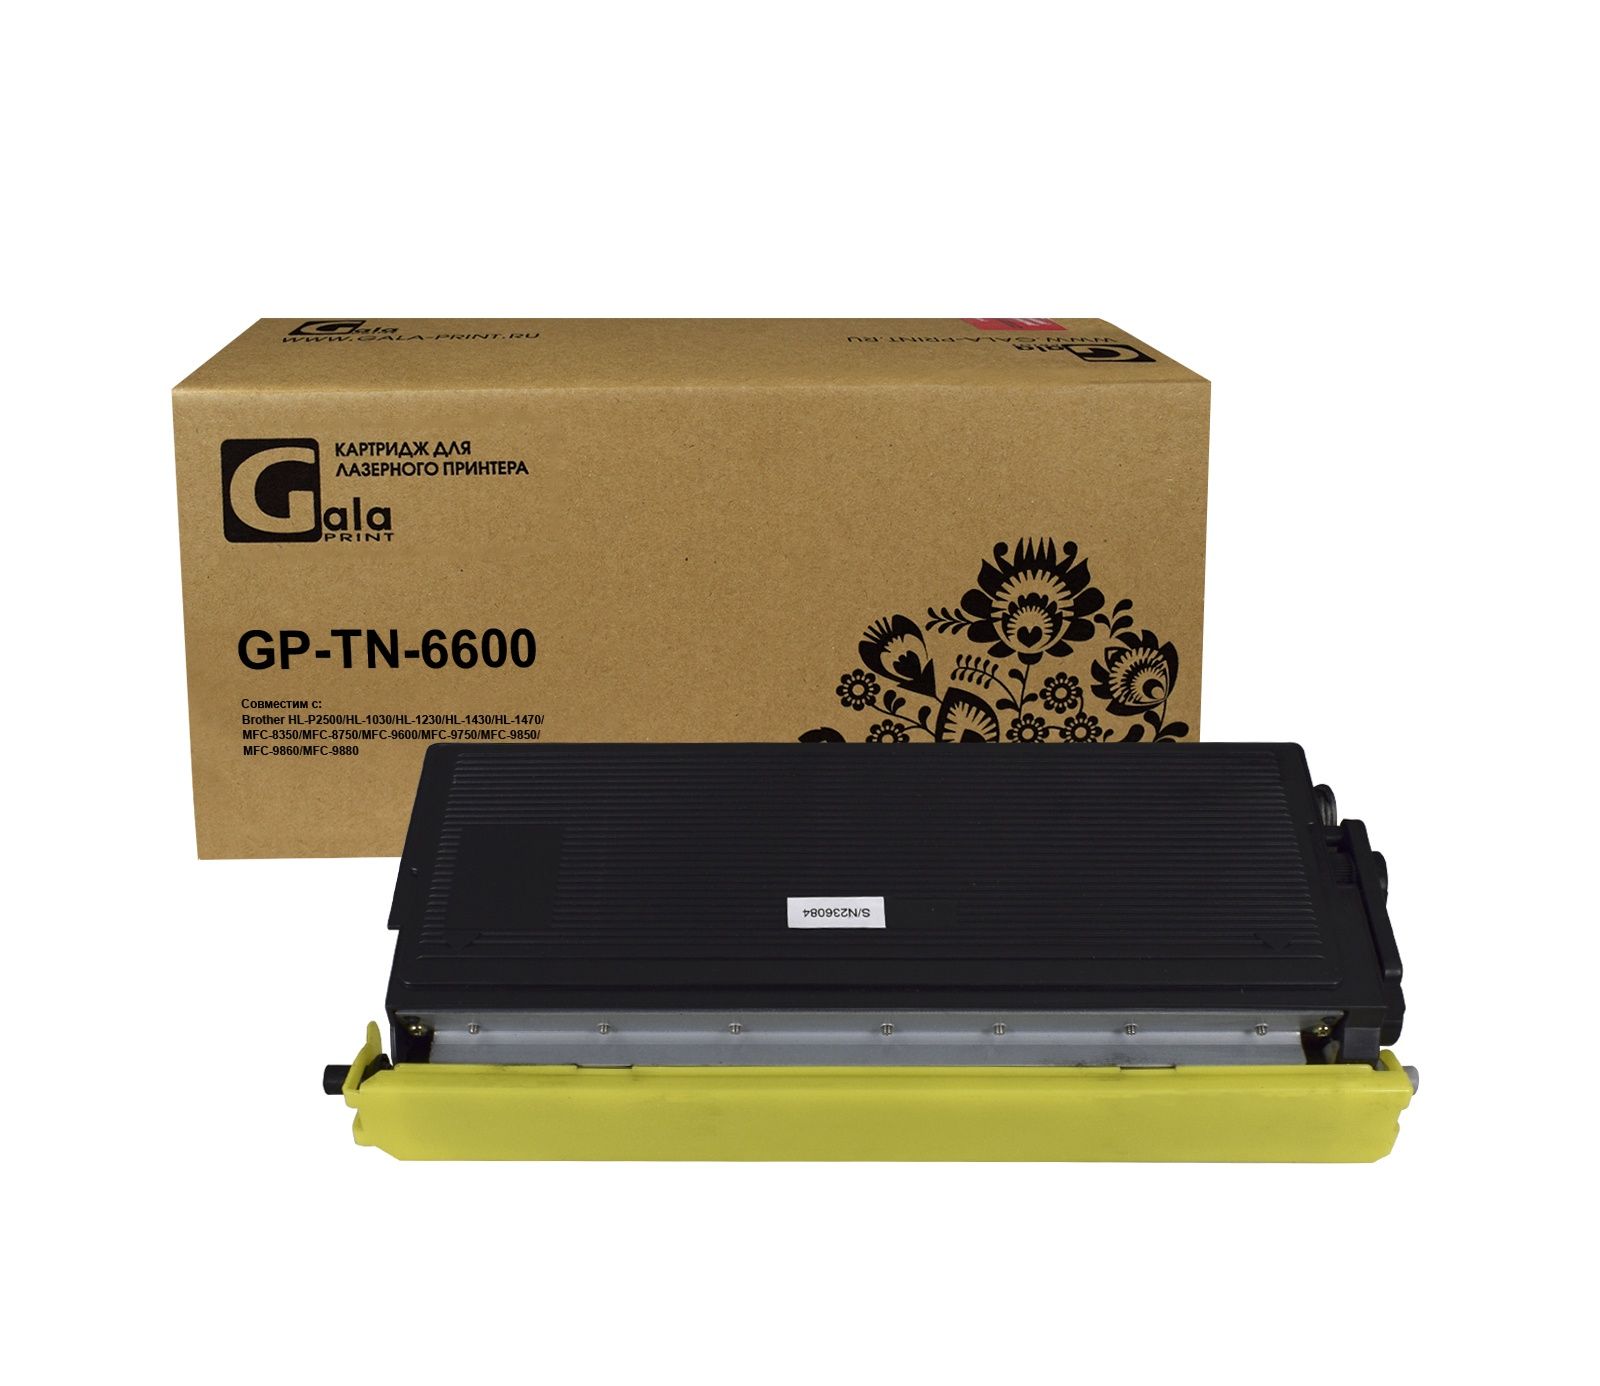 Картридж GP-TN-6600 для принтеров Brother HL-P2500/HL-1030/HL-1230/HL-1430/HL-1470/MFC-8350/MFC-8750/MFC-9600/MFC-9750/MFC-9850/MFC-9860/MFC-9880 6000 копий GalaPrint